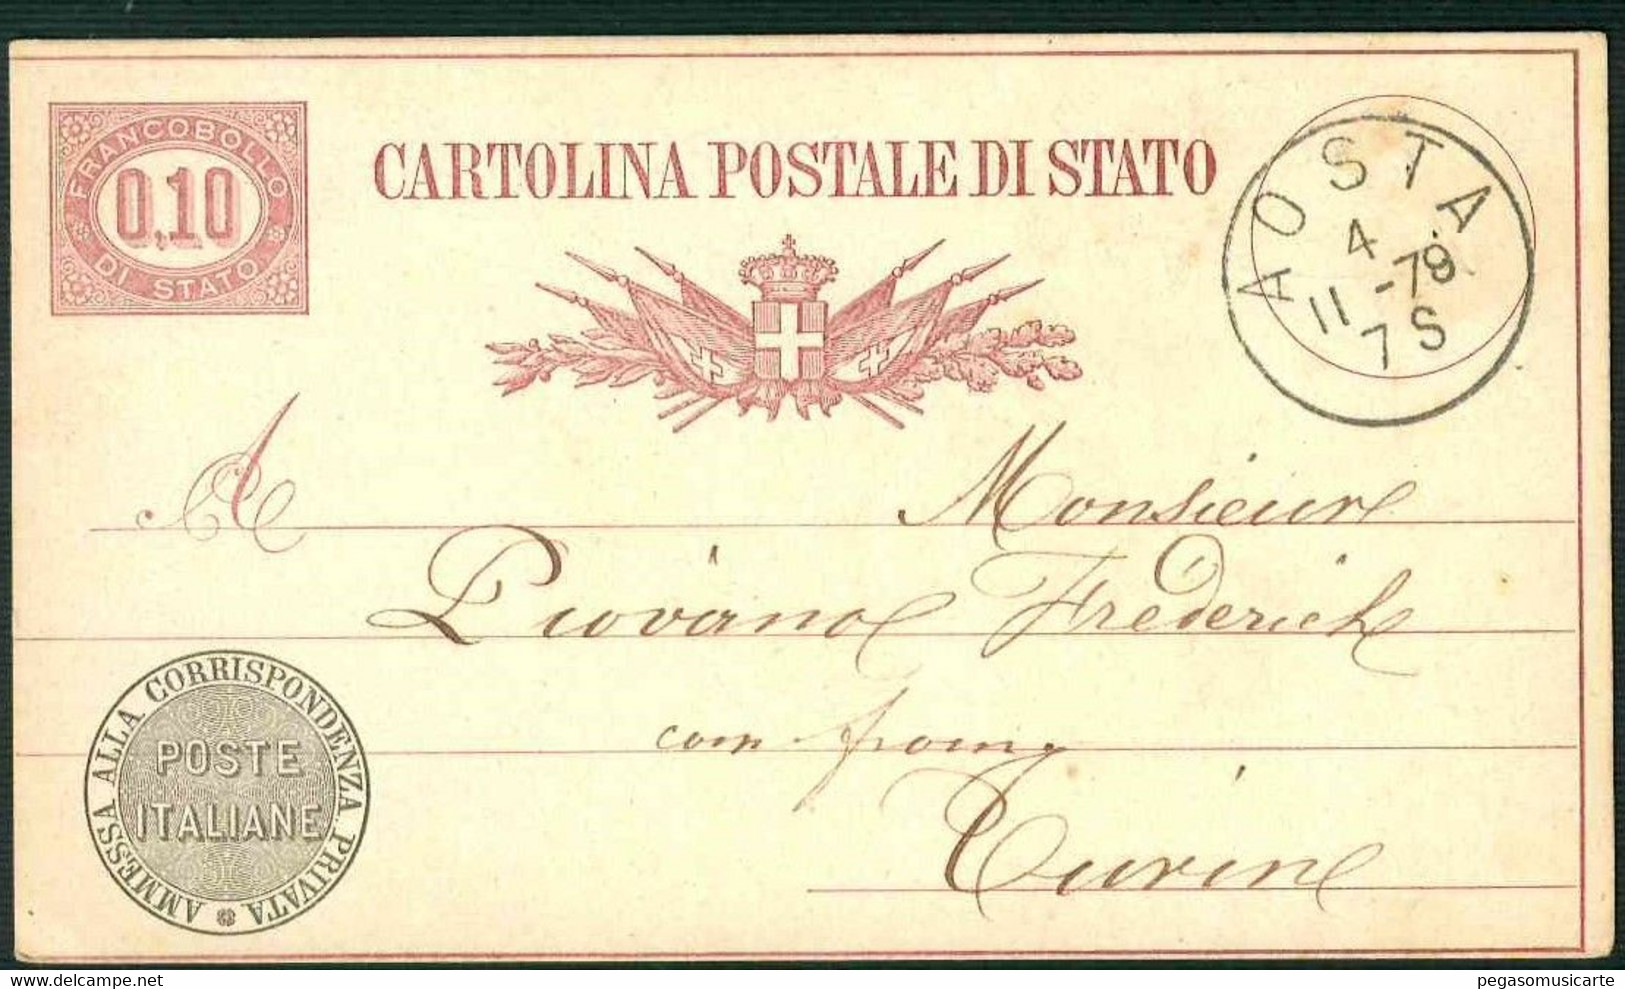 CLH382 -  CARTOLINA POSTALE DI STATO CENTESIMI 0,10 -  STORIA POSTALE 1878 DA AOSTA A TORINO INTERO POSTALE - Entiers Postaux